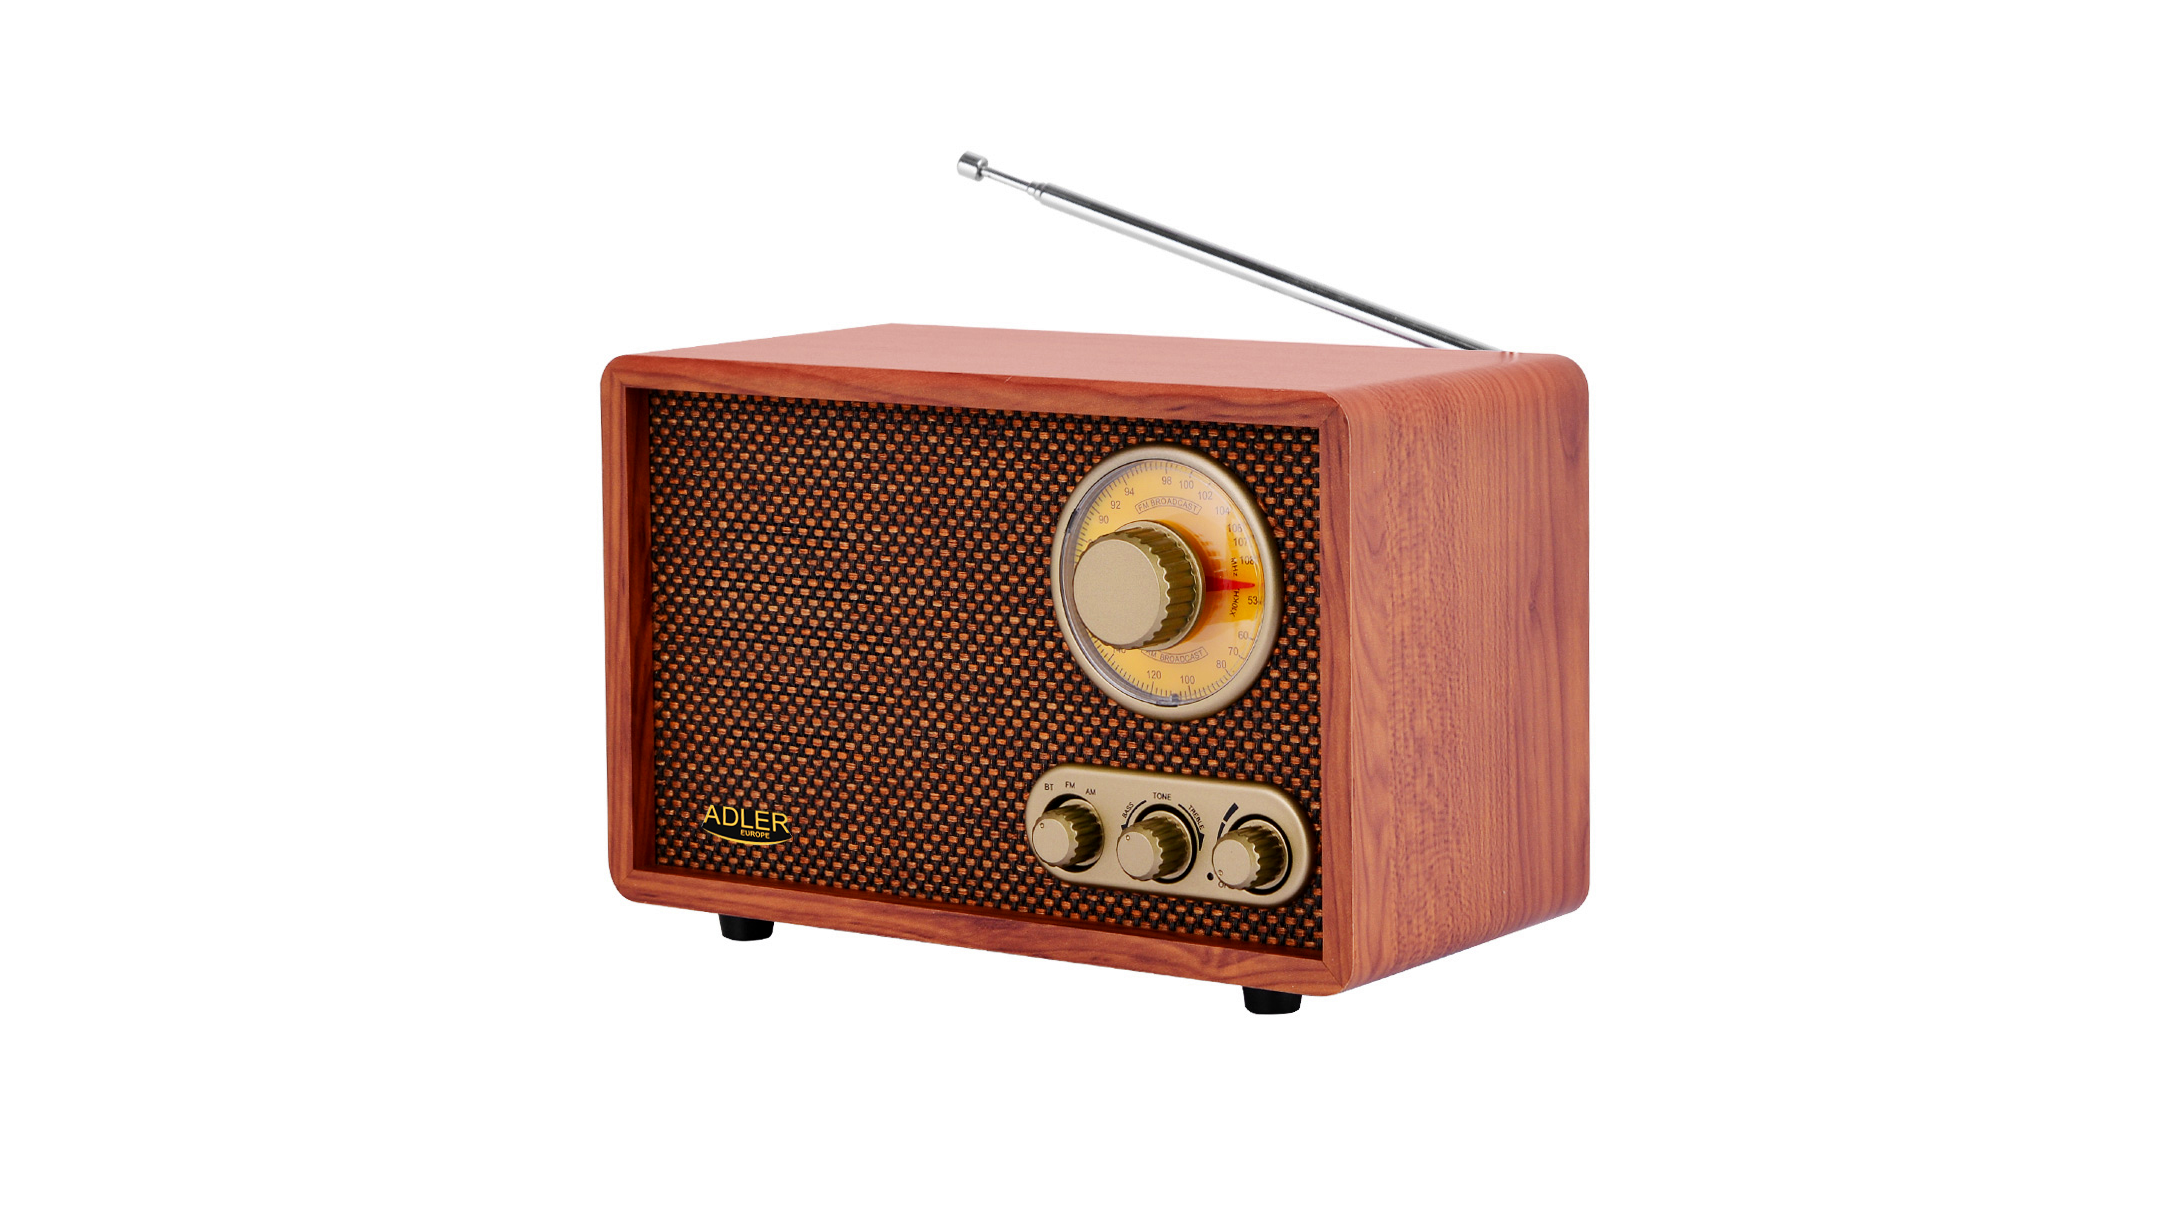 Vintage Radio tragbares Küchenradio Retro-Design einfache Bedienung Adler AD 1171 Retro Radio Holzgehäuse Nostalgieradio mit Teleskopantenne braun Bluetooth AM/FM 